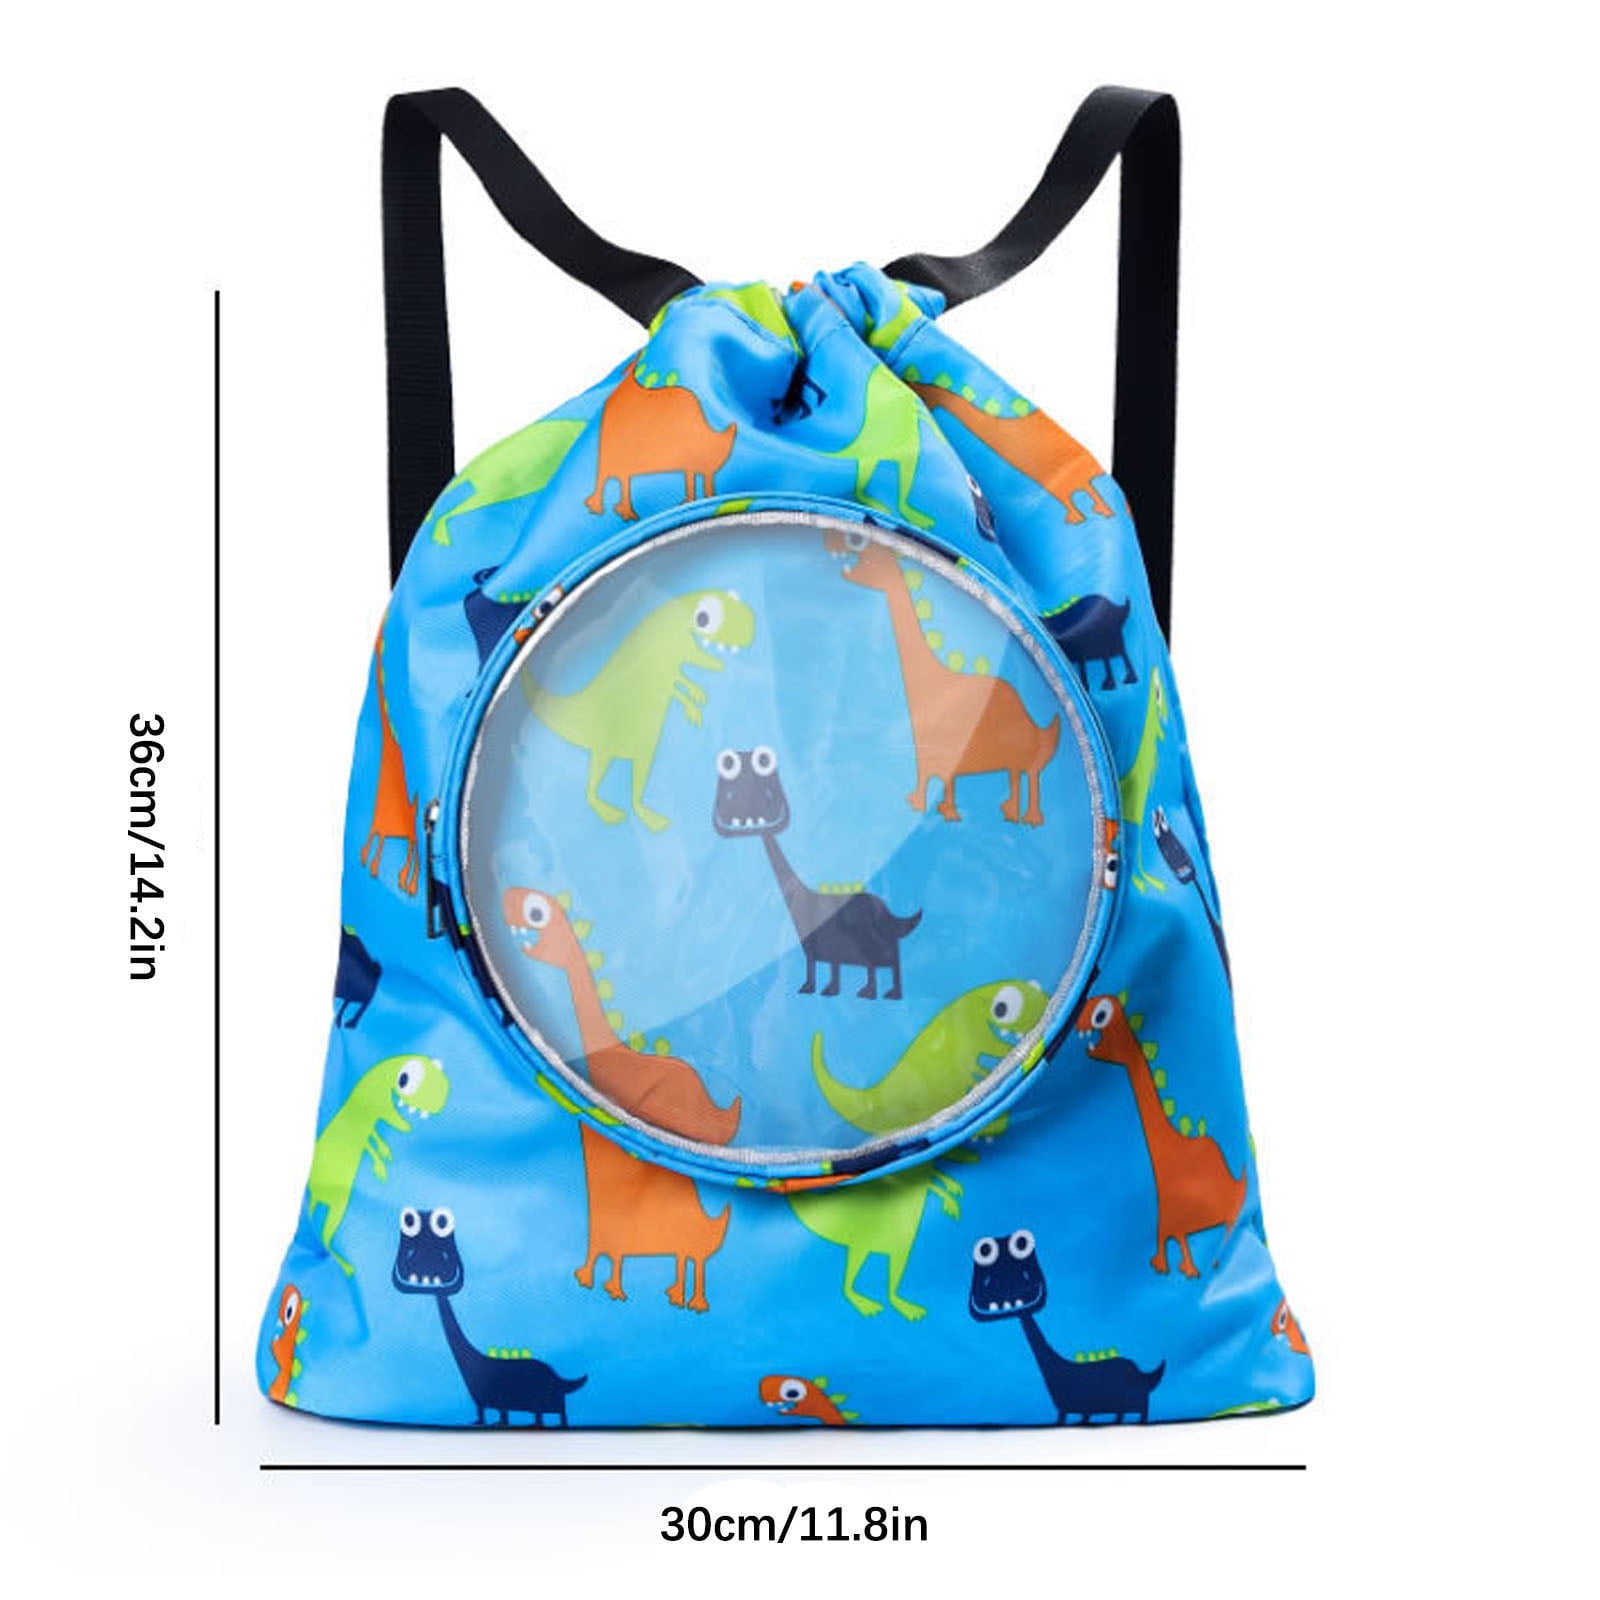 Drawstring Backpack Sports Gym Bag for Women Men Children for Hiking Yoga Swimming Travel Beach 